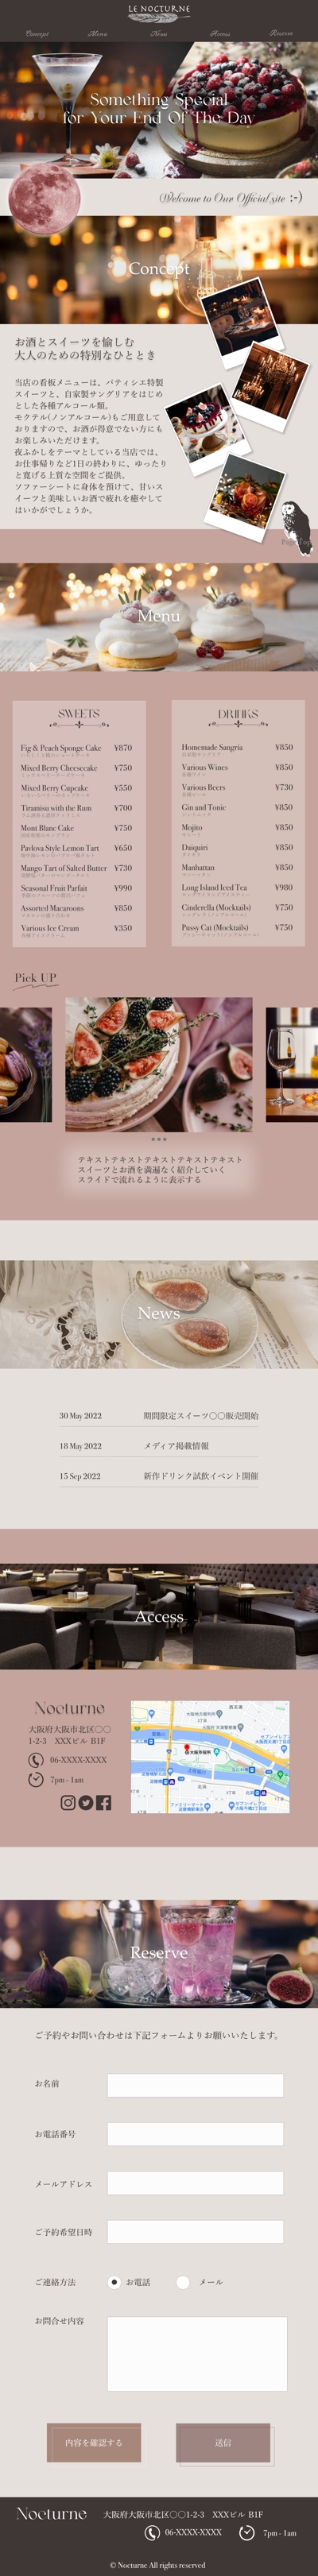 【架空カフェ】Webサイト(LP)デザイン